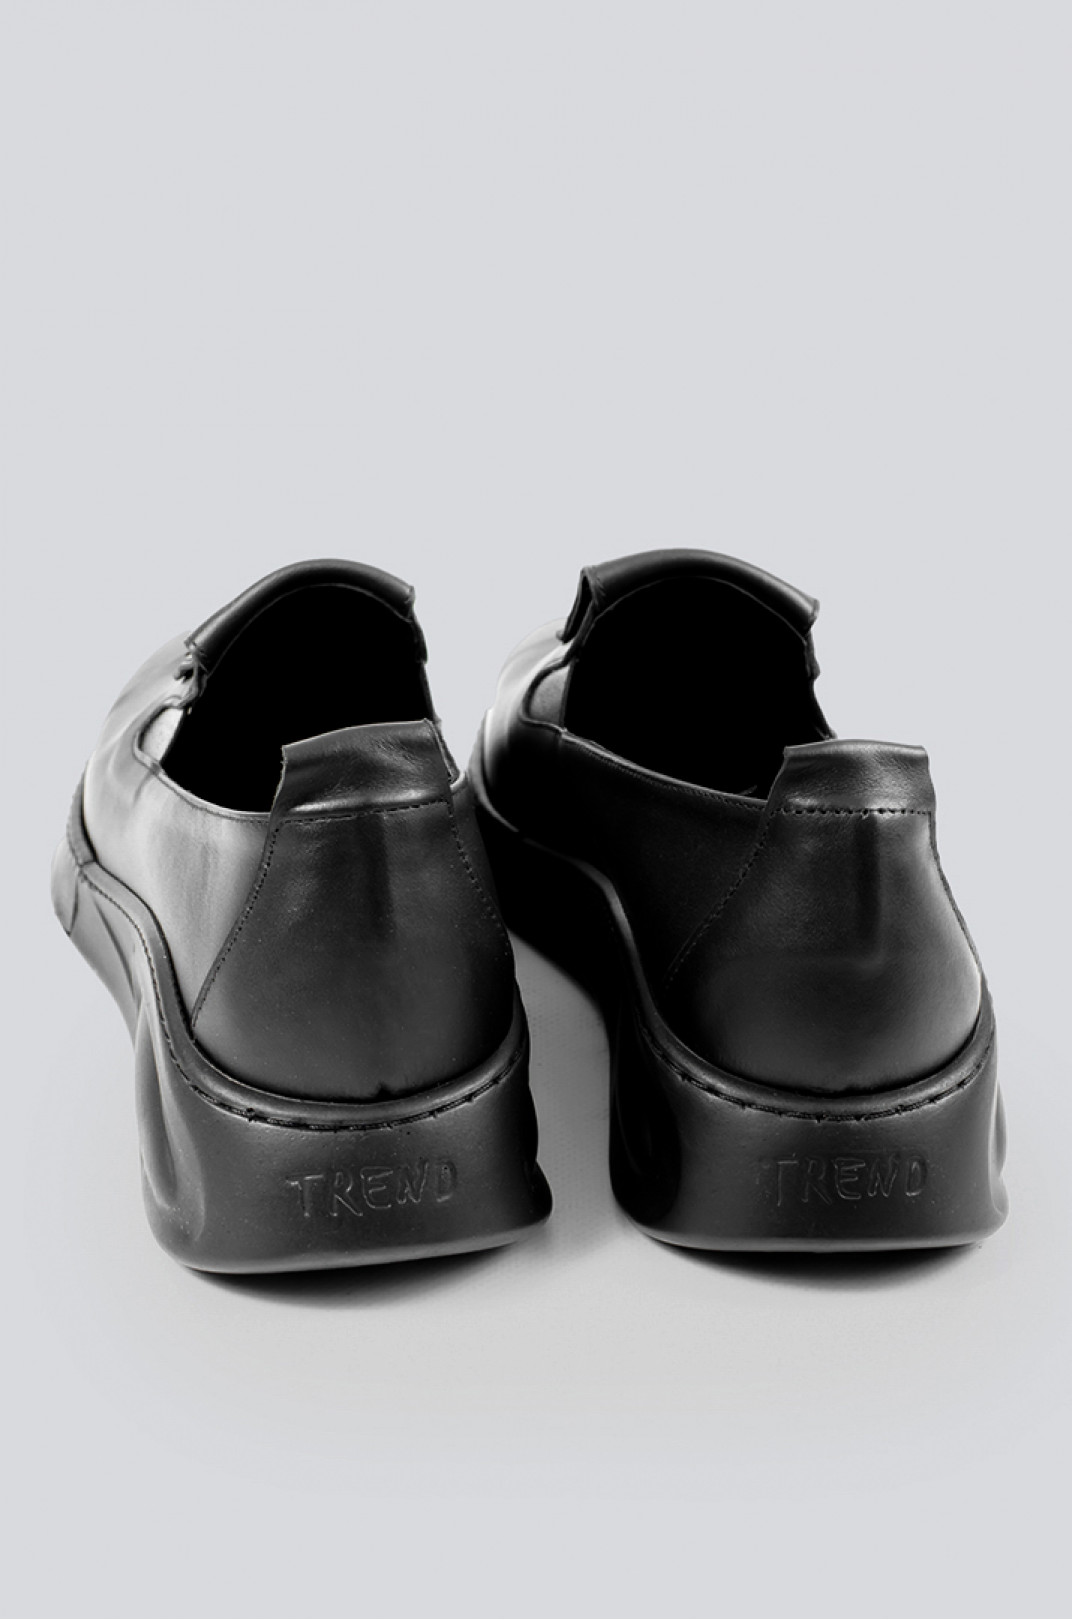 Туфлі чорні шкіряні з блискавкою великих розмірів